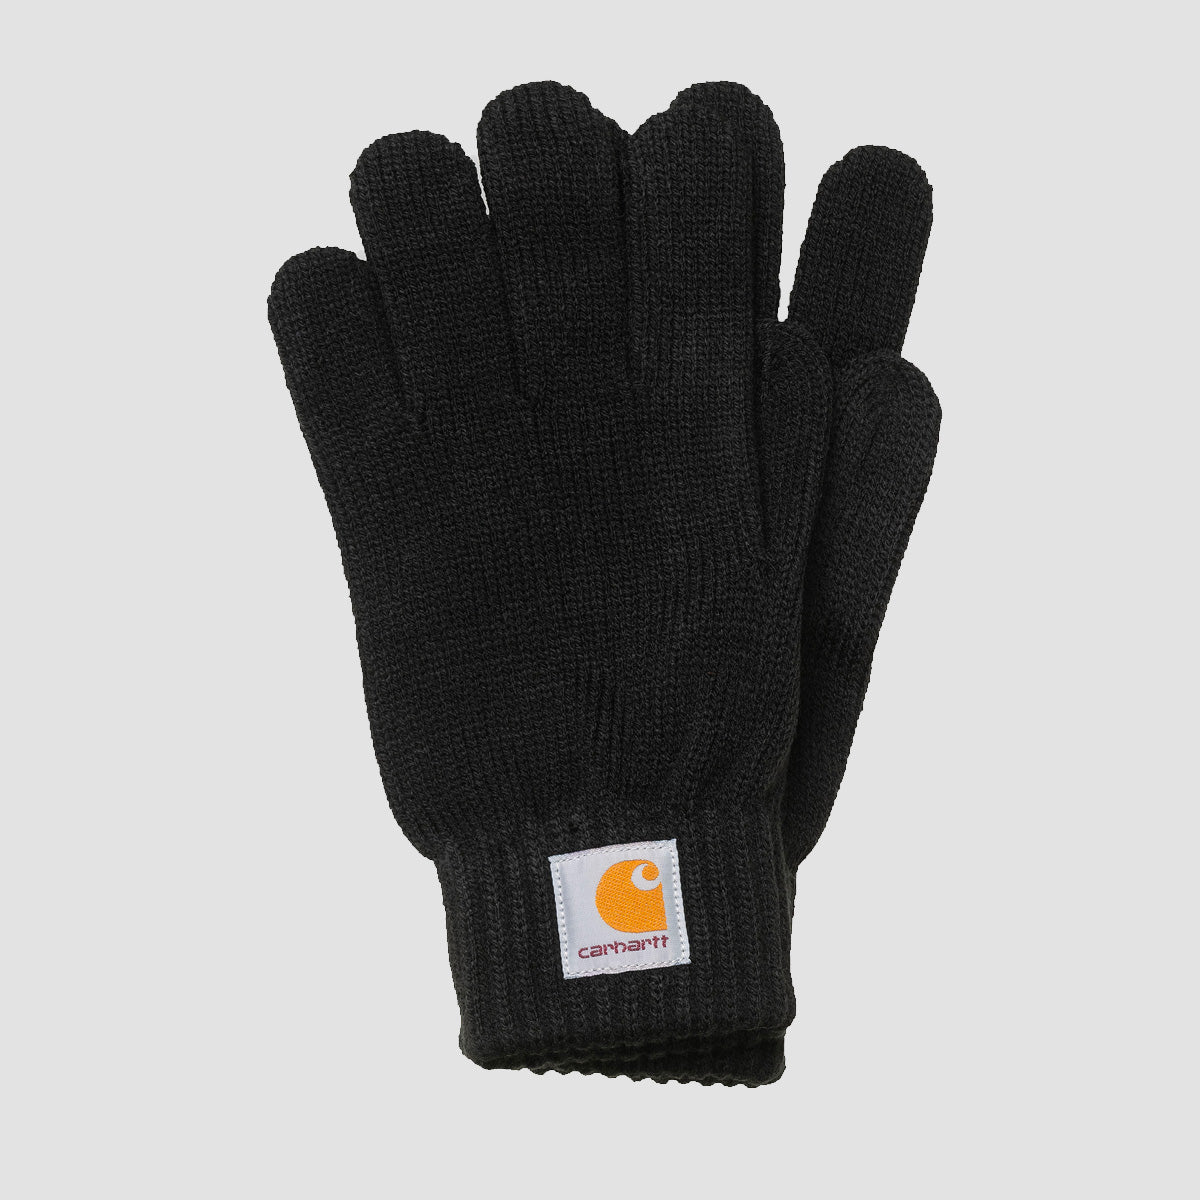 Carhartt WIP Watch Gloves Black - Unisex